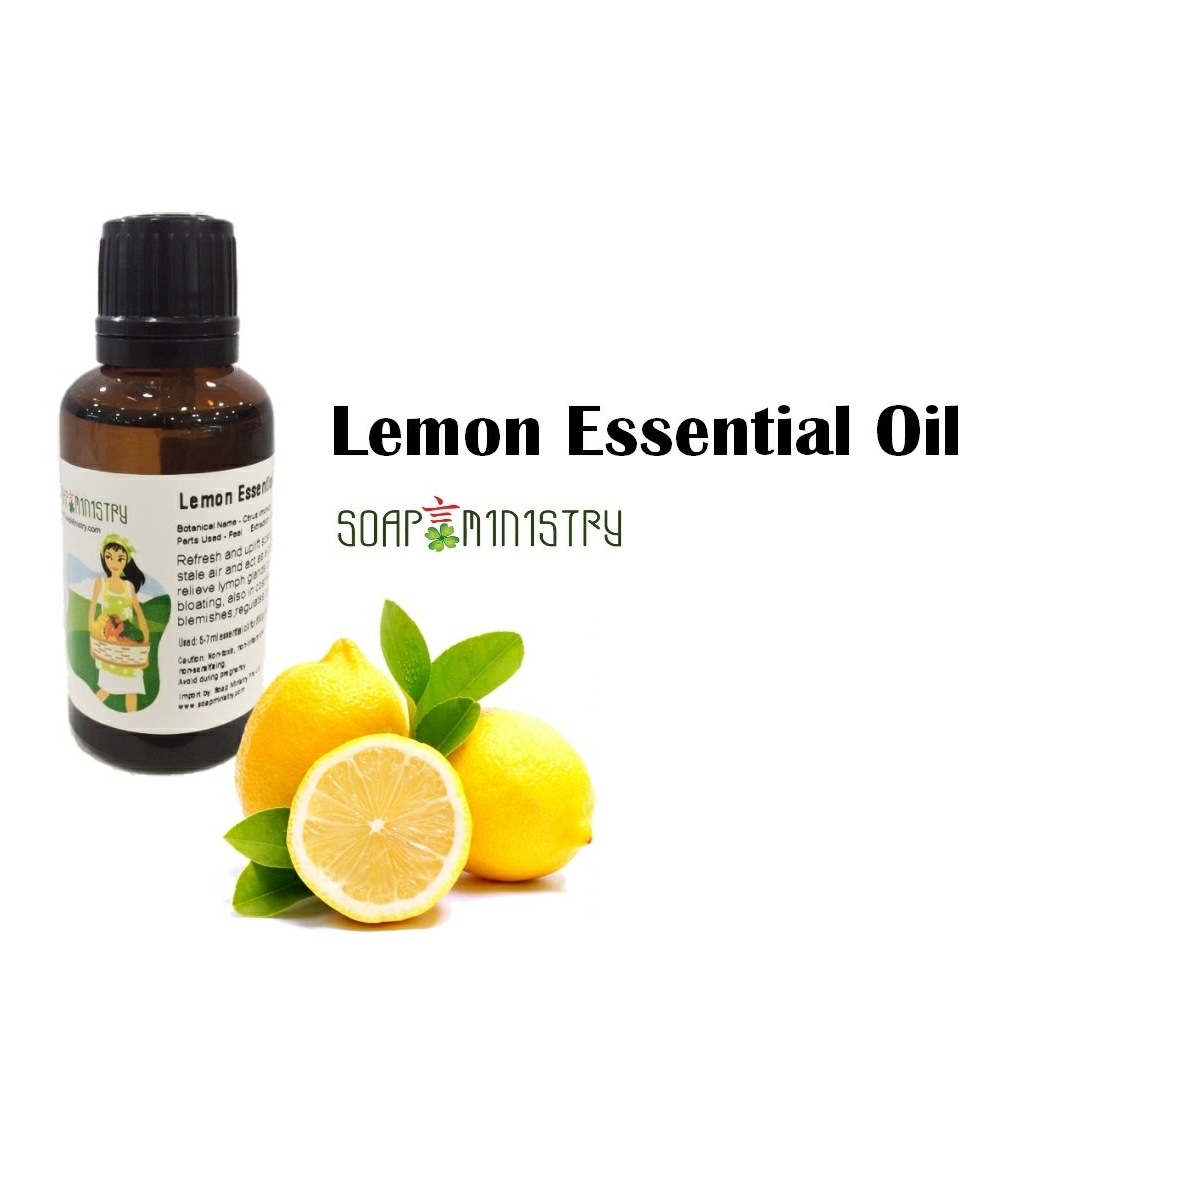 Lemon Essential Oil 1L